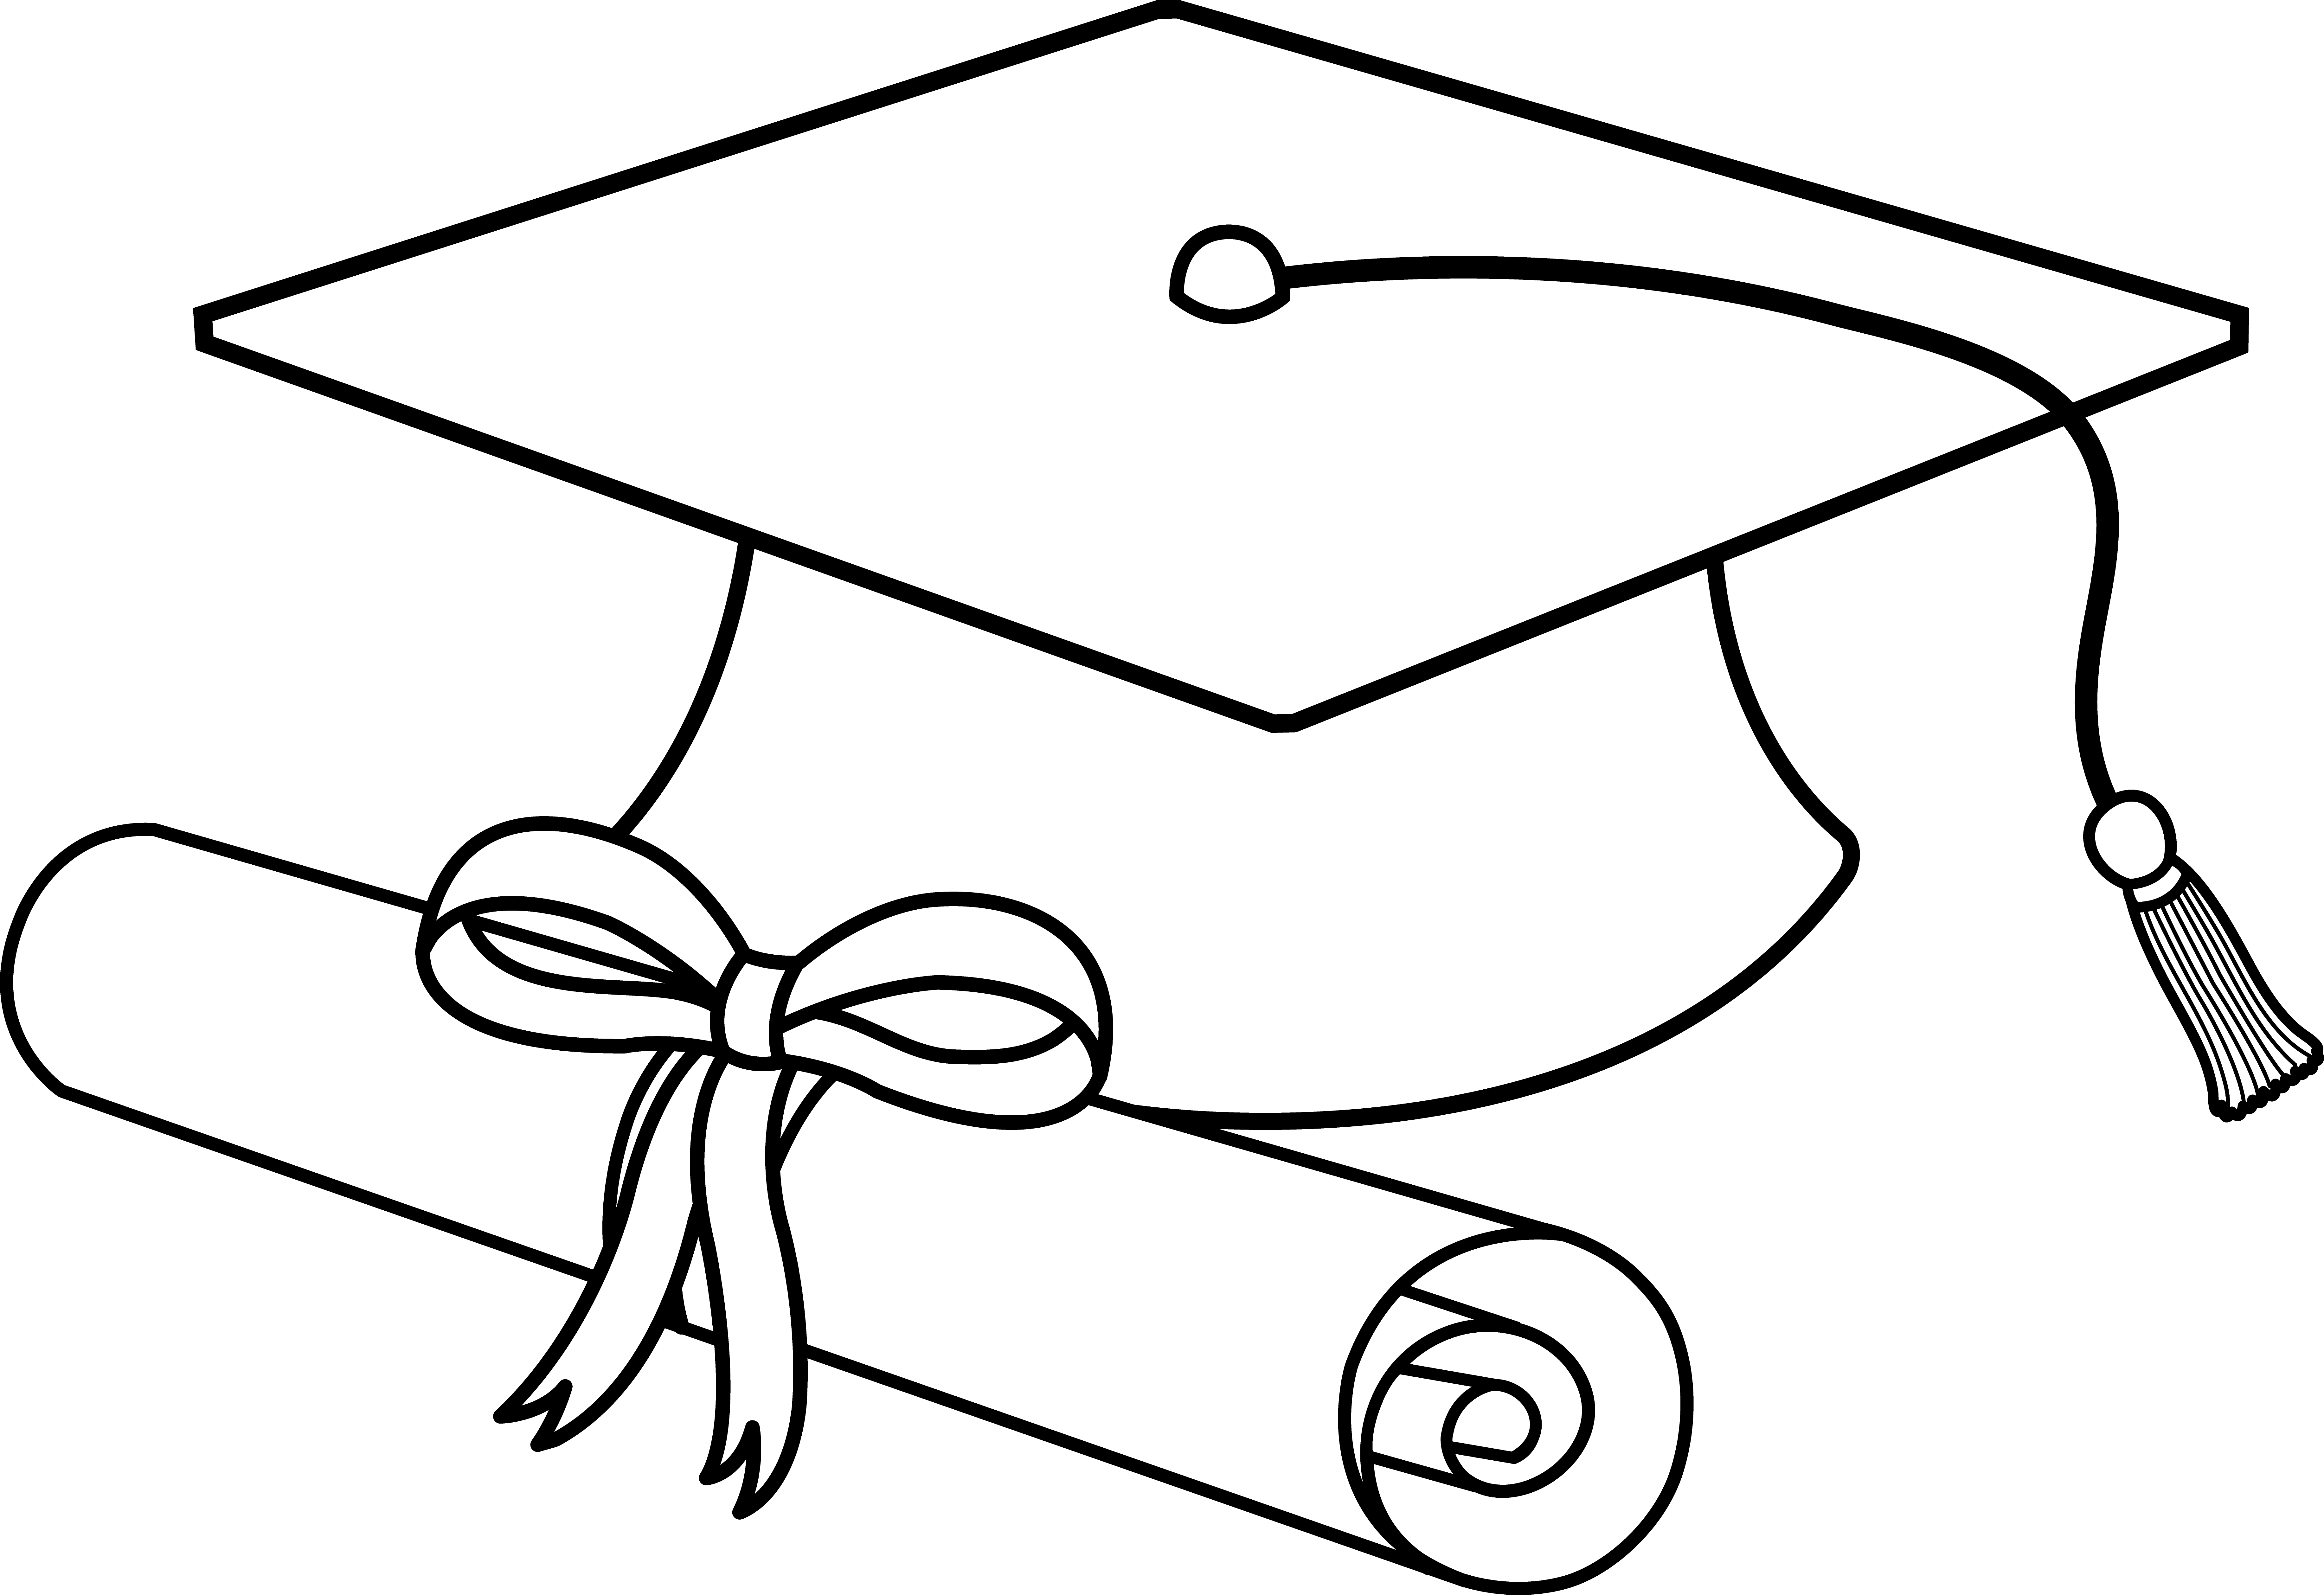 Graduation Symbols Images | Free Download Clip Art | Free Clip Art ...